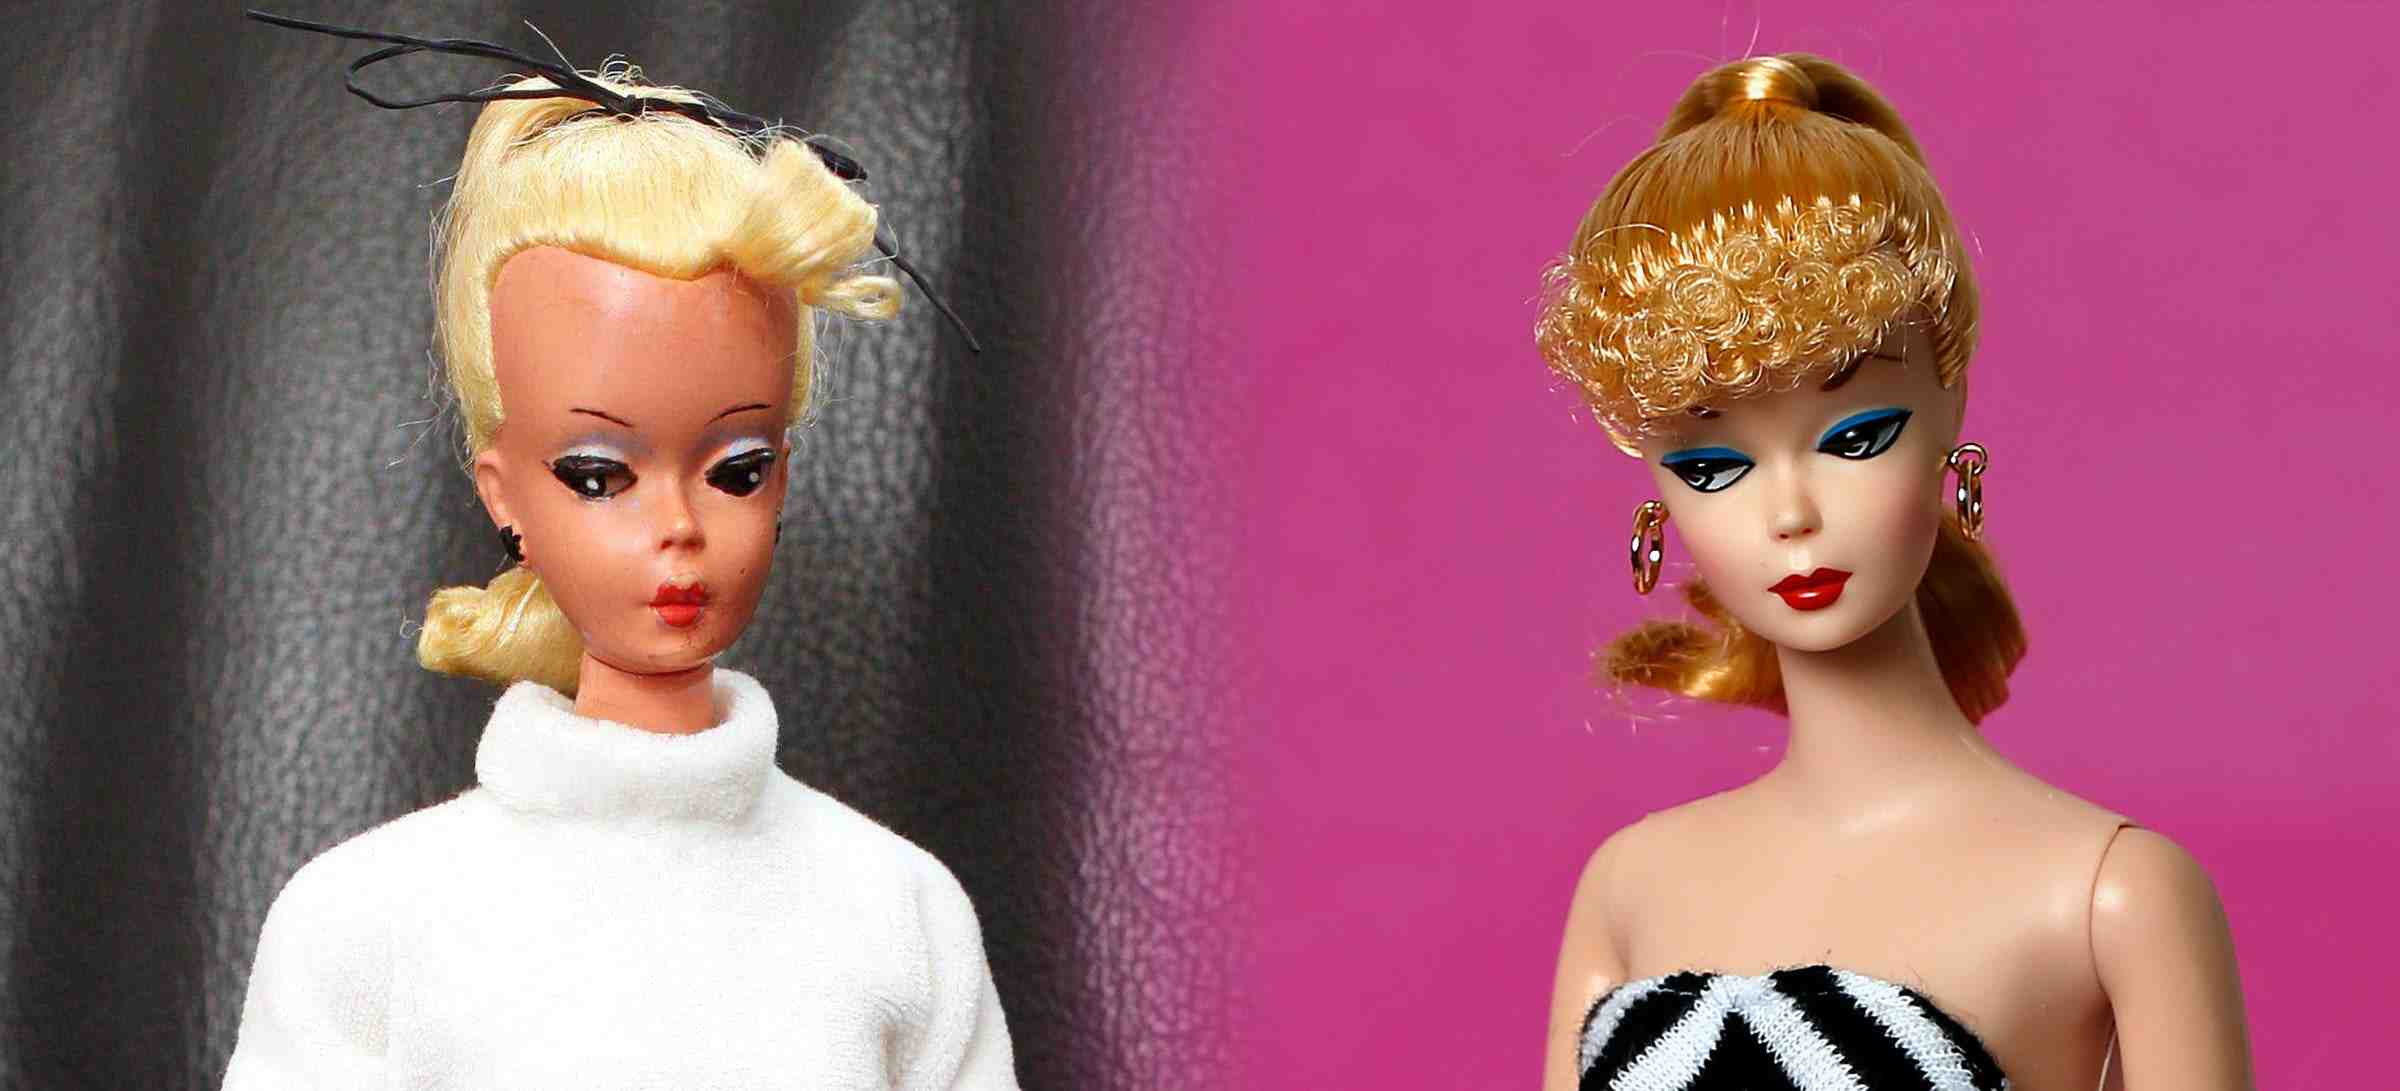 sejarah barbie bild lillie